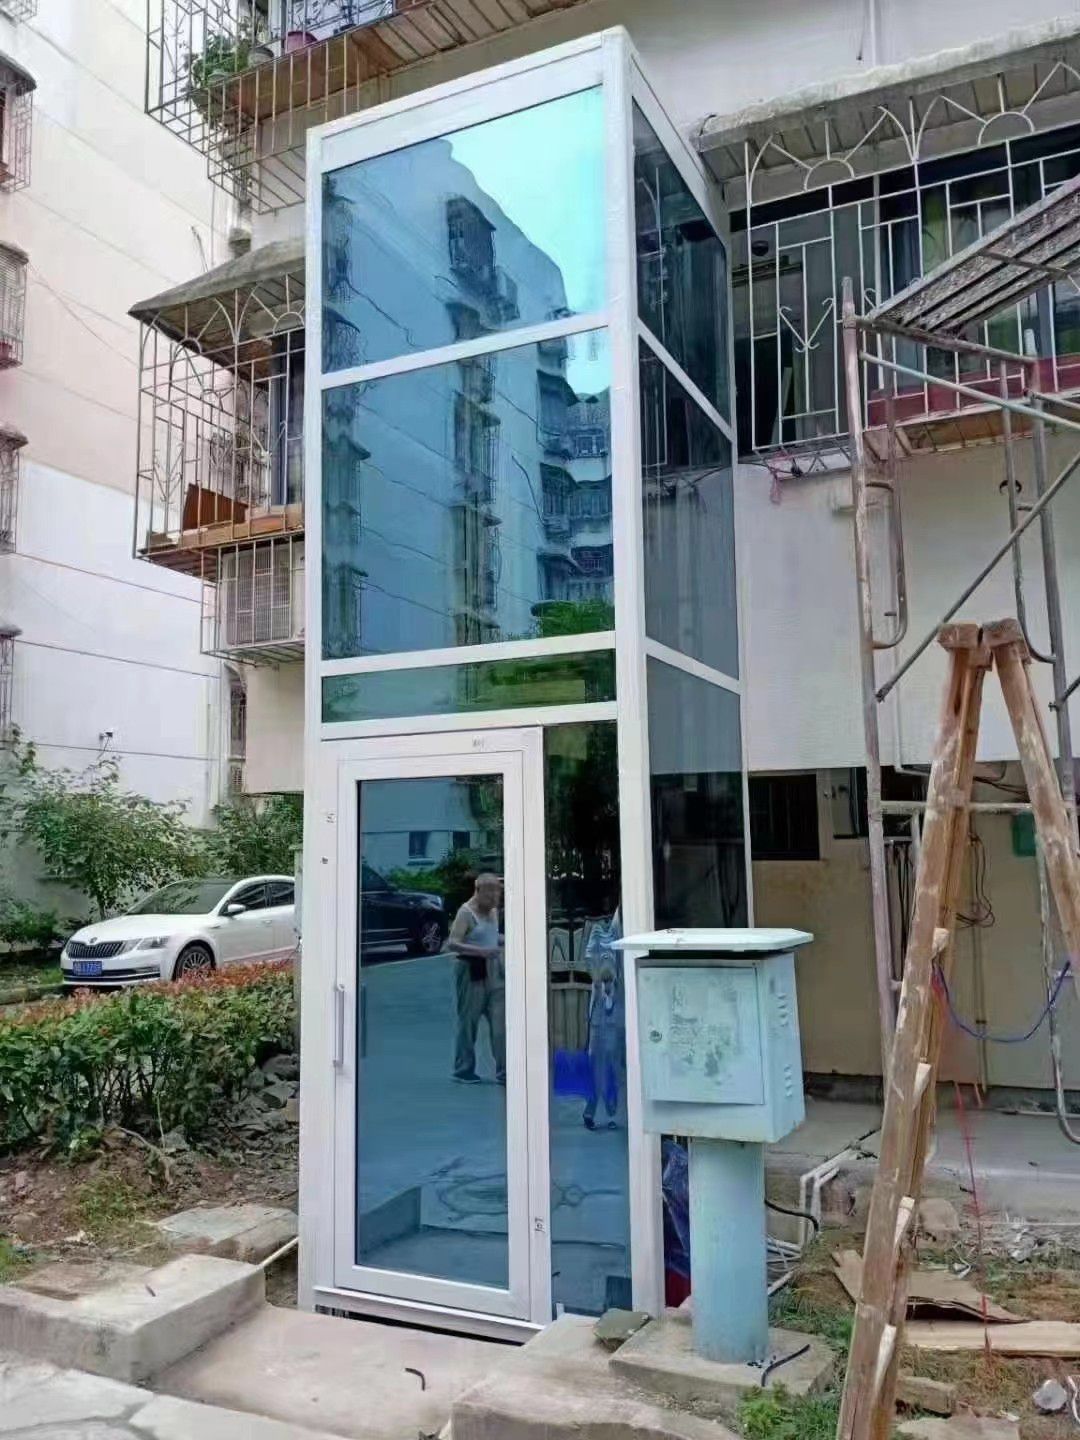 锦州小型家用电梯 即将结束市场火爆化为泡影